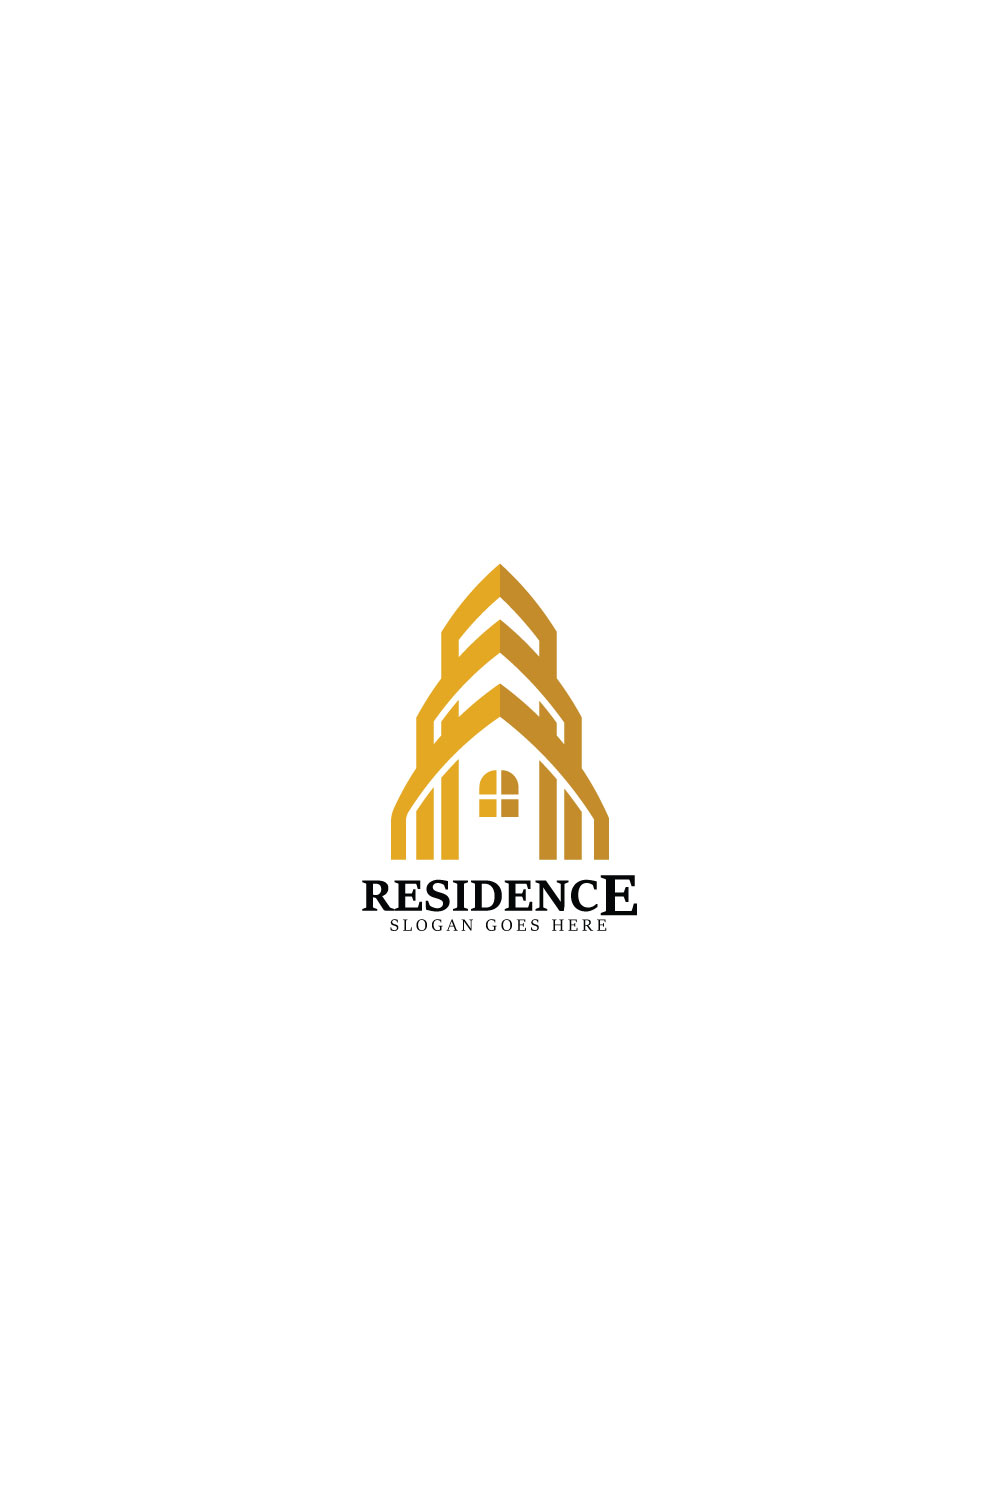 Residence logo design illustration pinterest preview image.